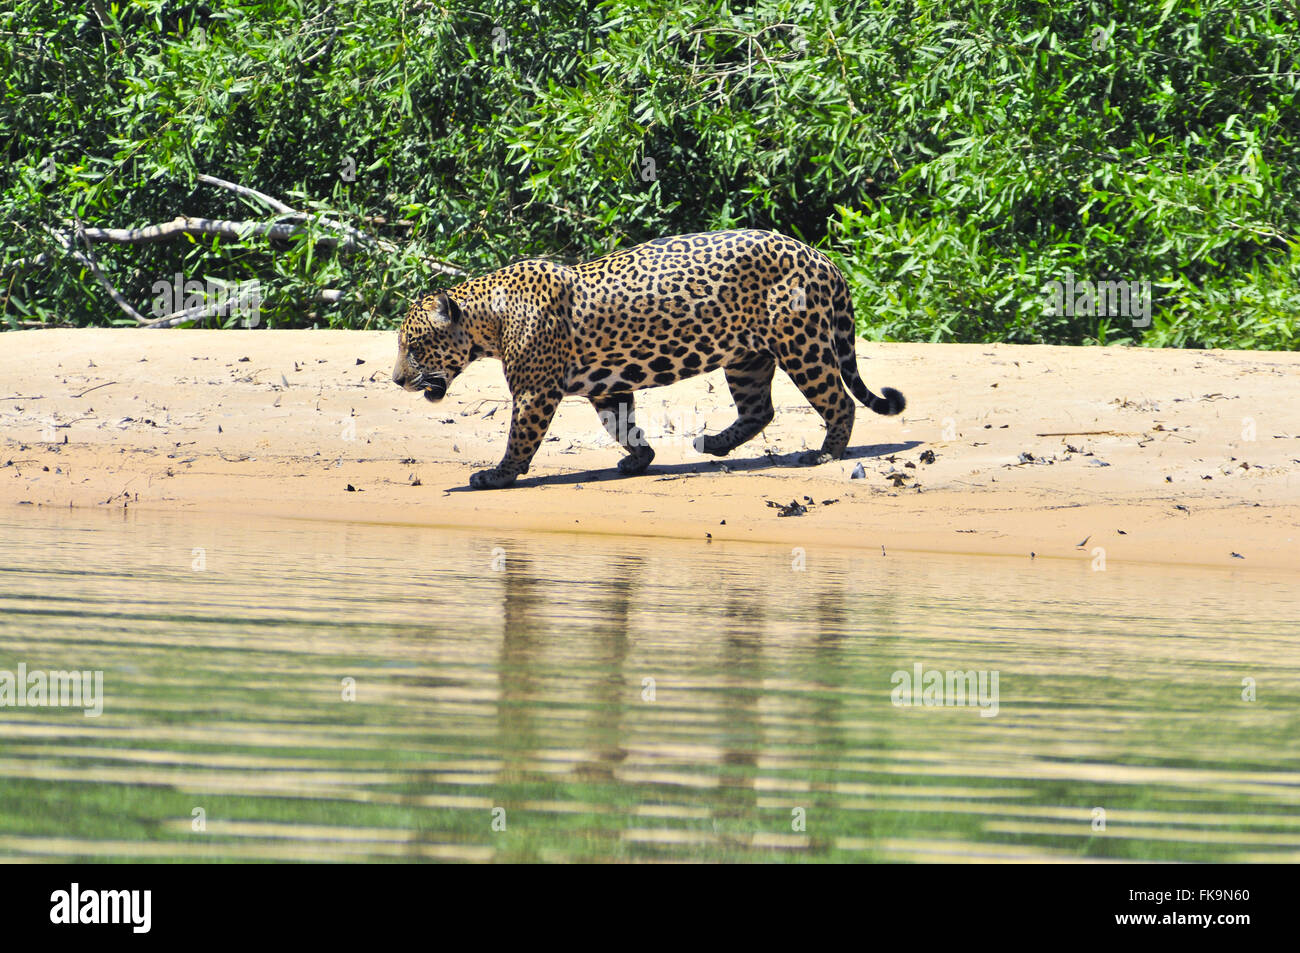 Jaguar - Panthera onca palustris - adult male in river beach of river Piquiri Stock Photo